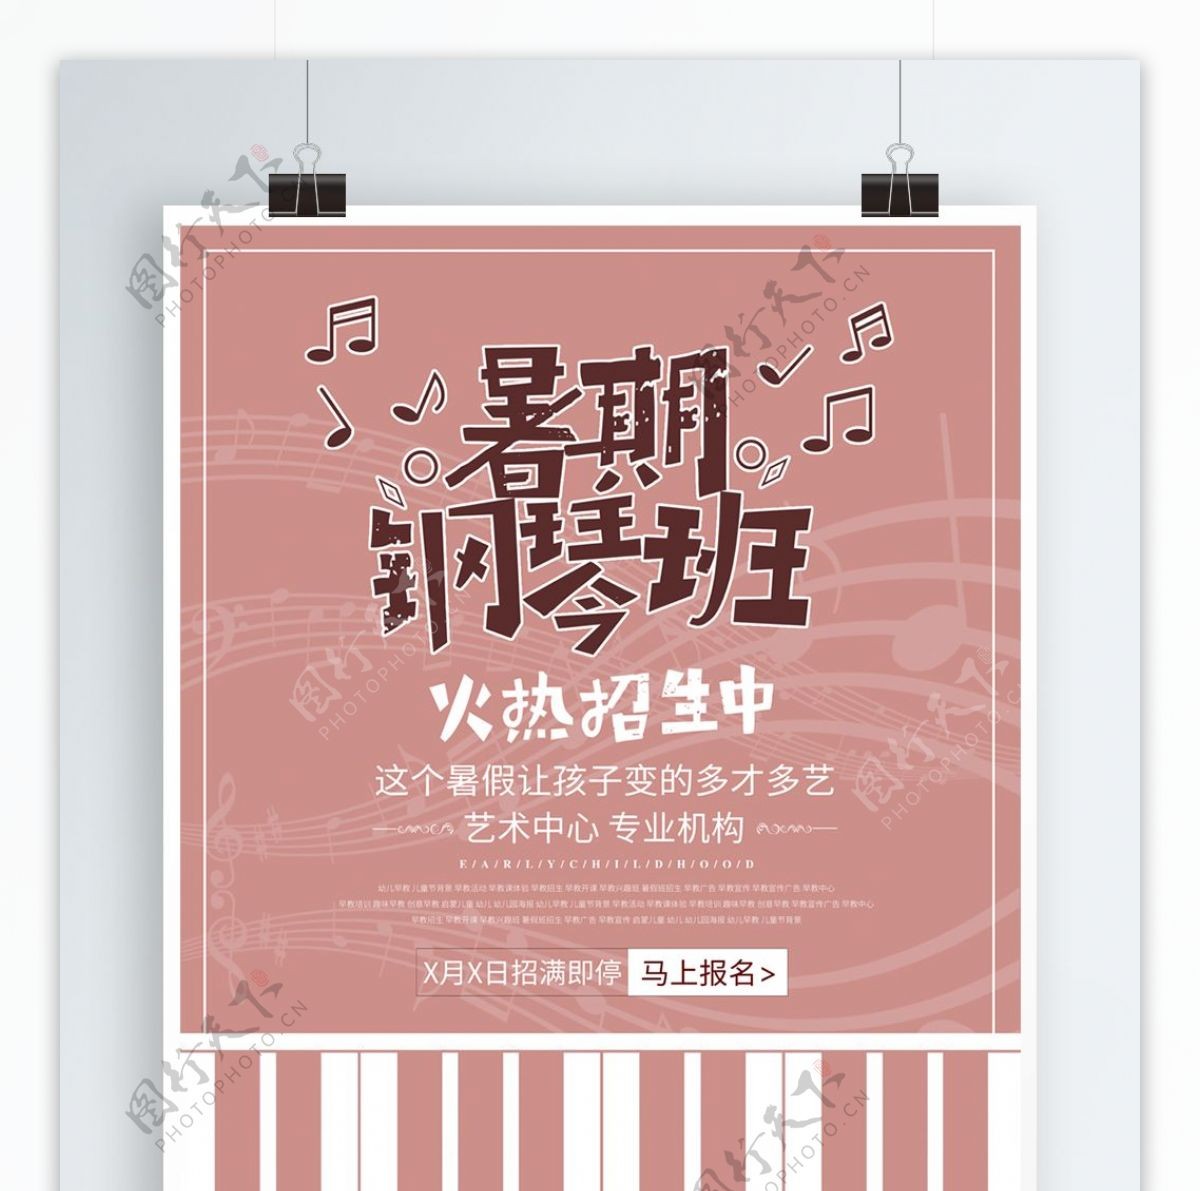 扁平化音乐艺术中心钢琴班招生海报